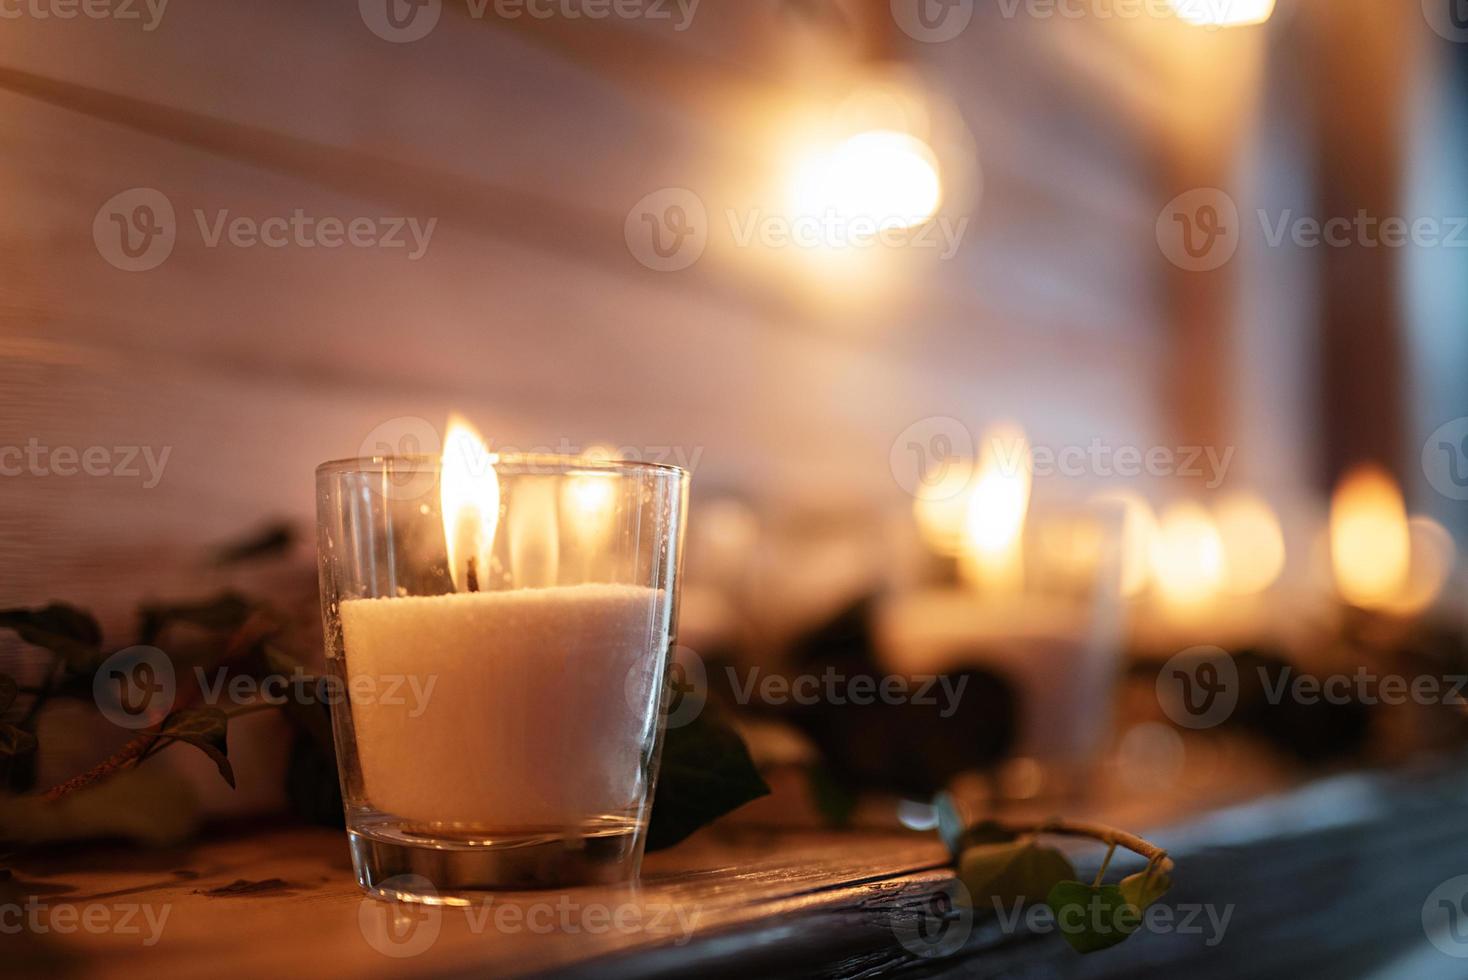 decorazioni di candele atmosferiche con fuoco vivo sul banchetto foto